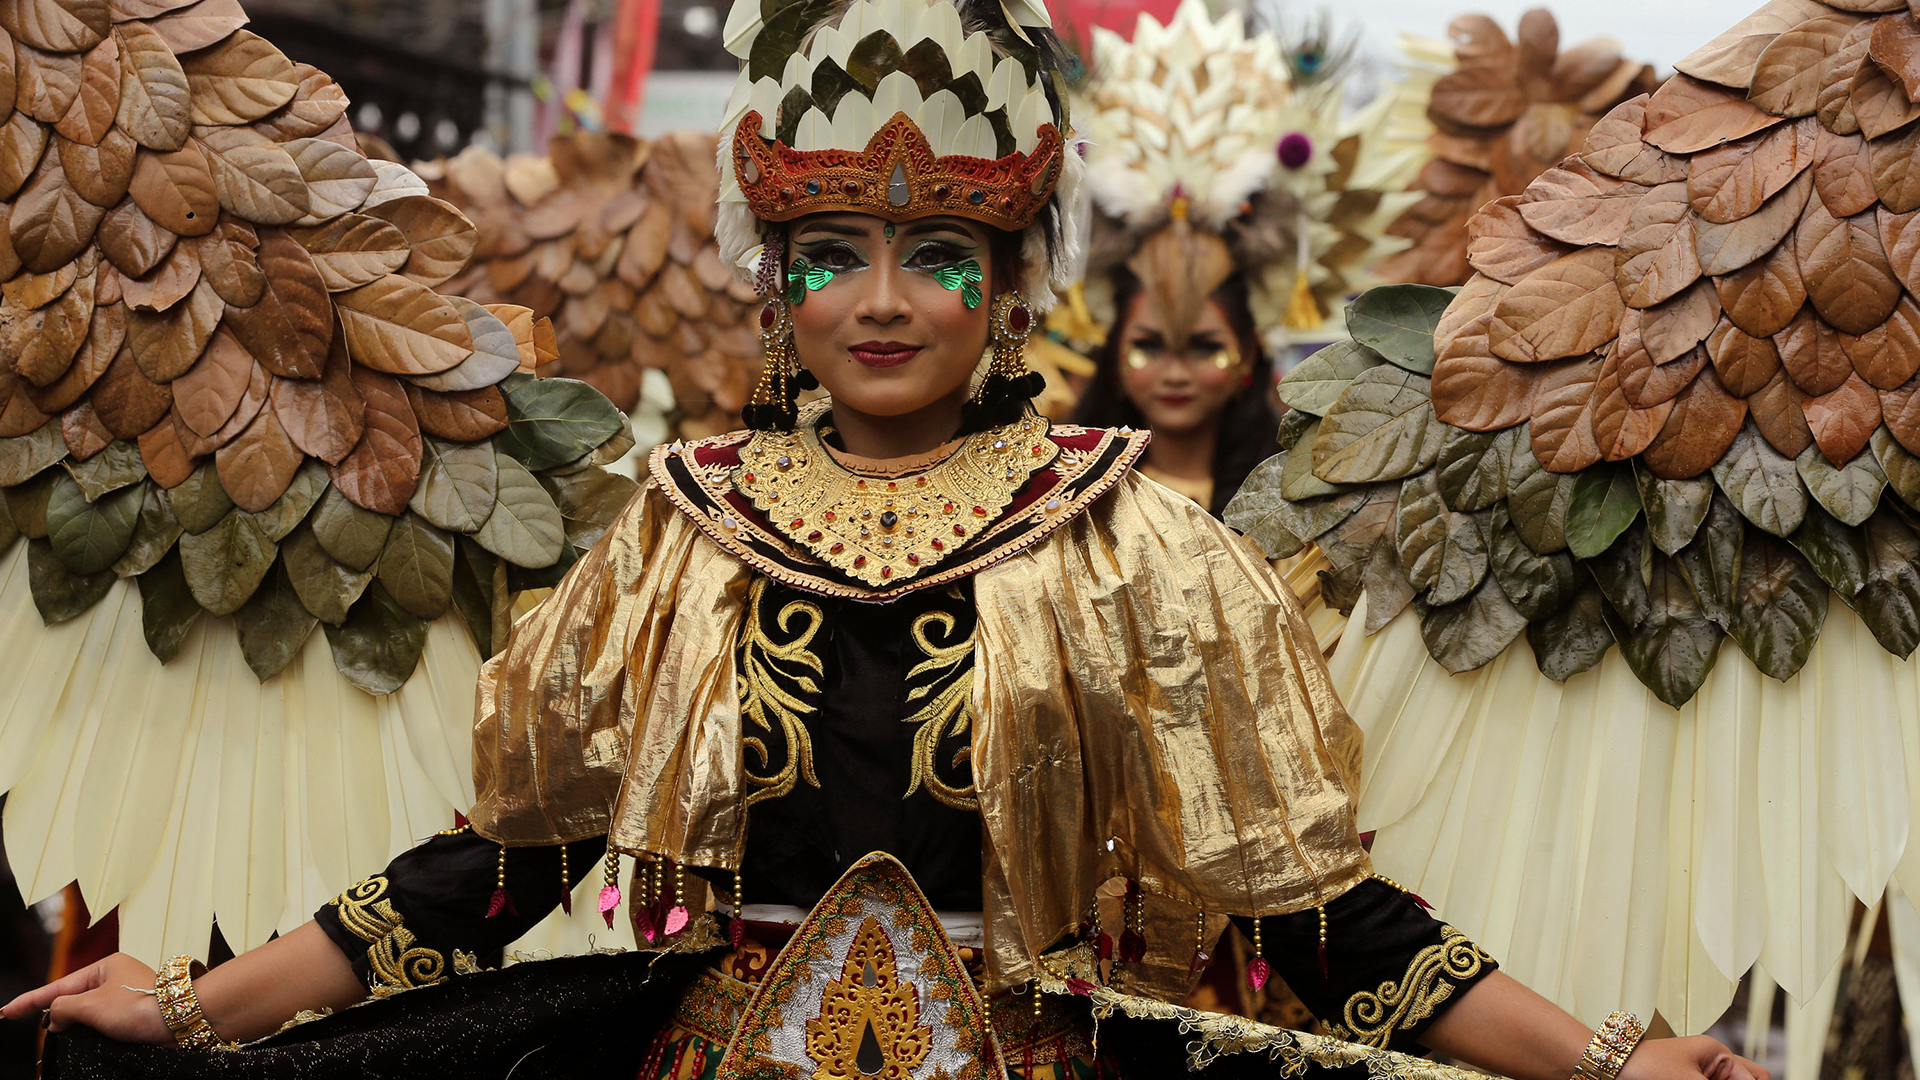 Frauen in Kostümen in einer Parade | AP